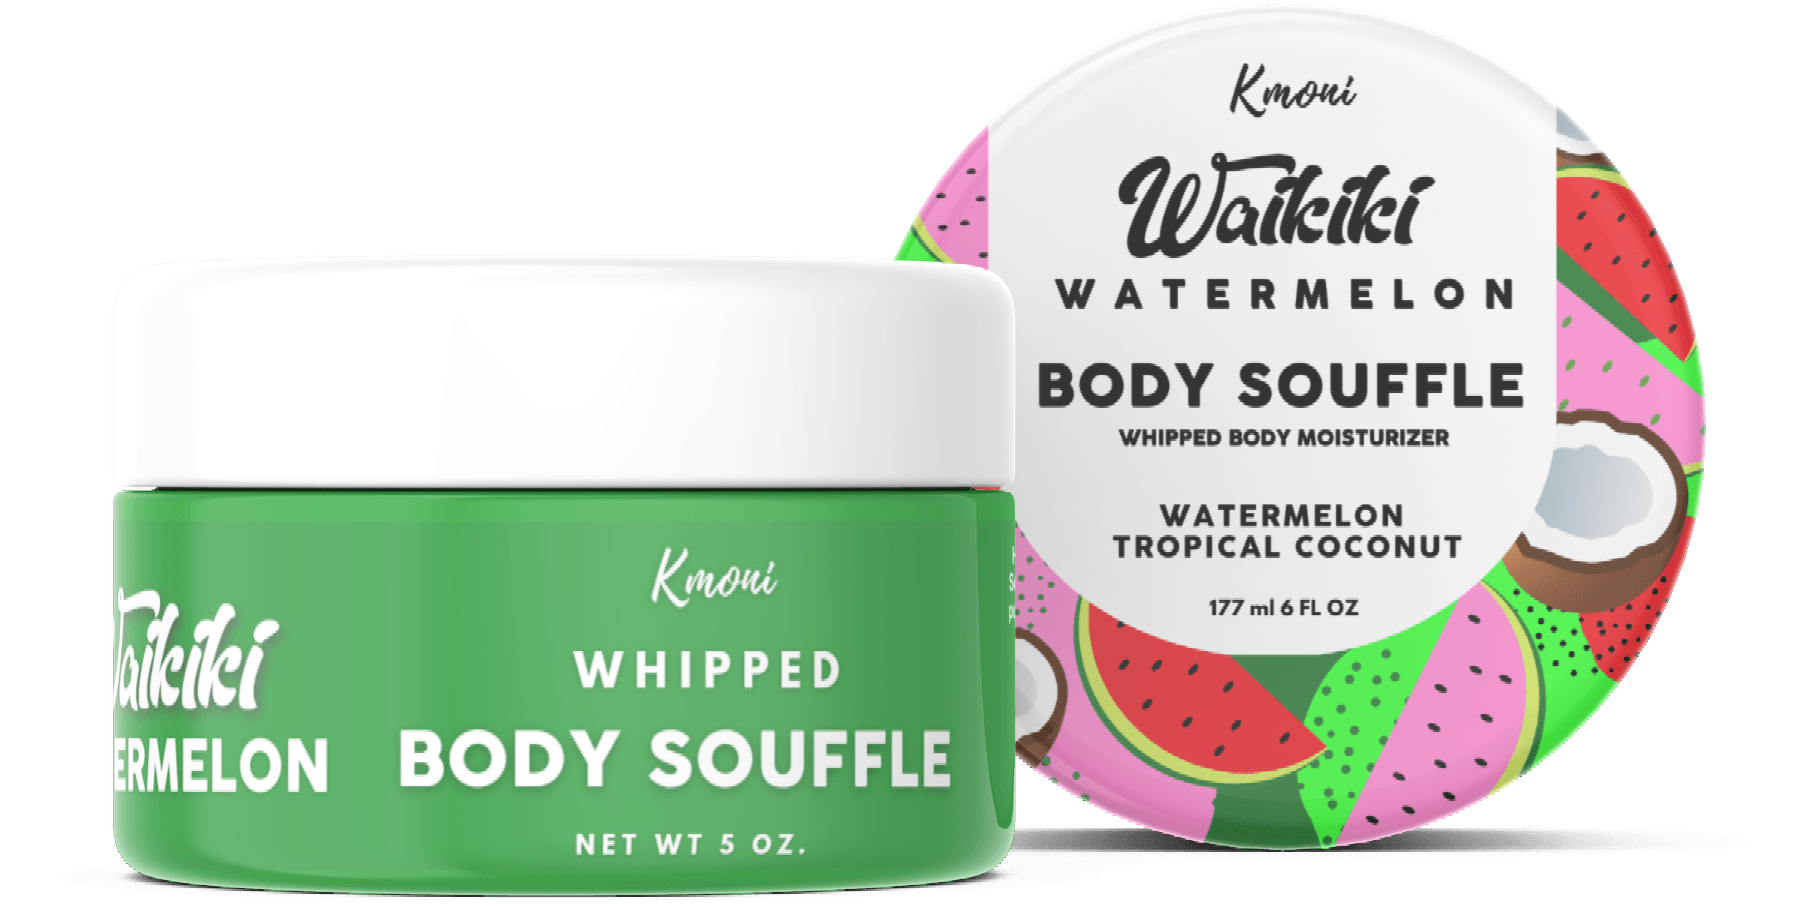 Waikiki Watermelon Whipped Body Souffle - Kmoni Cosmetics